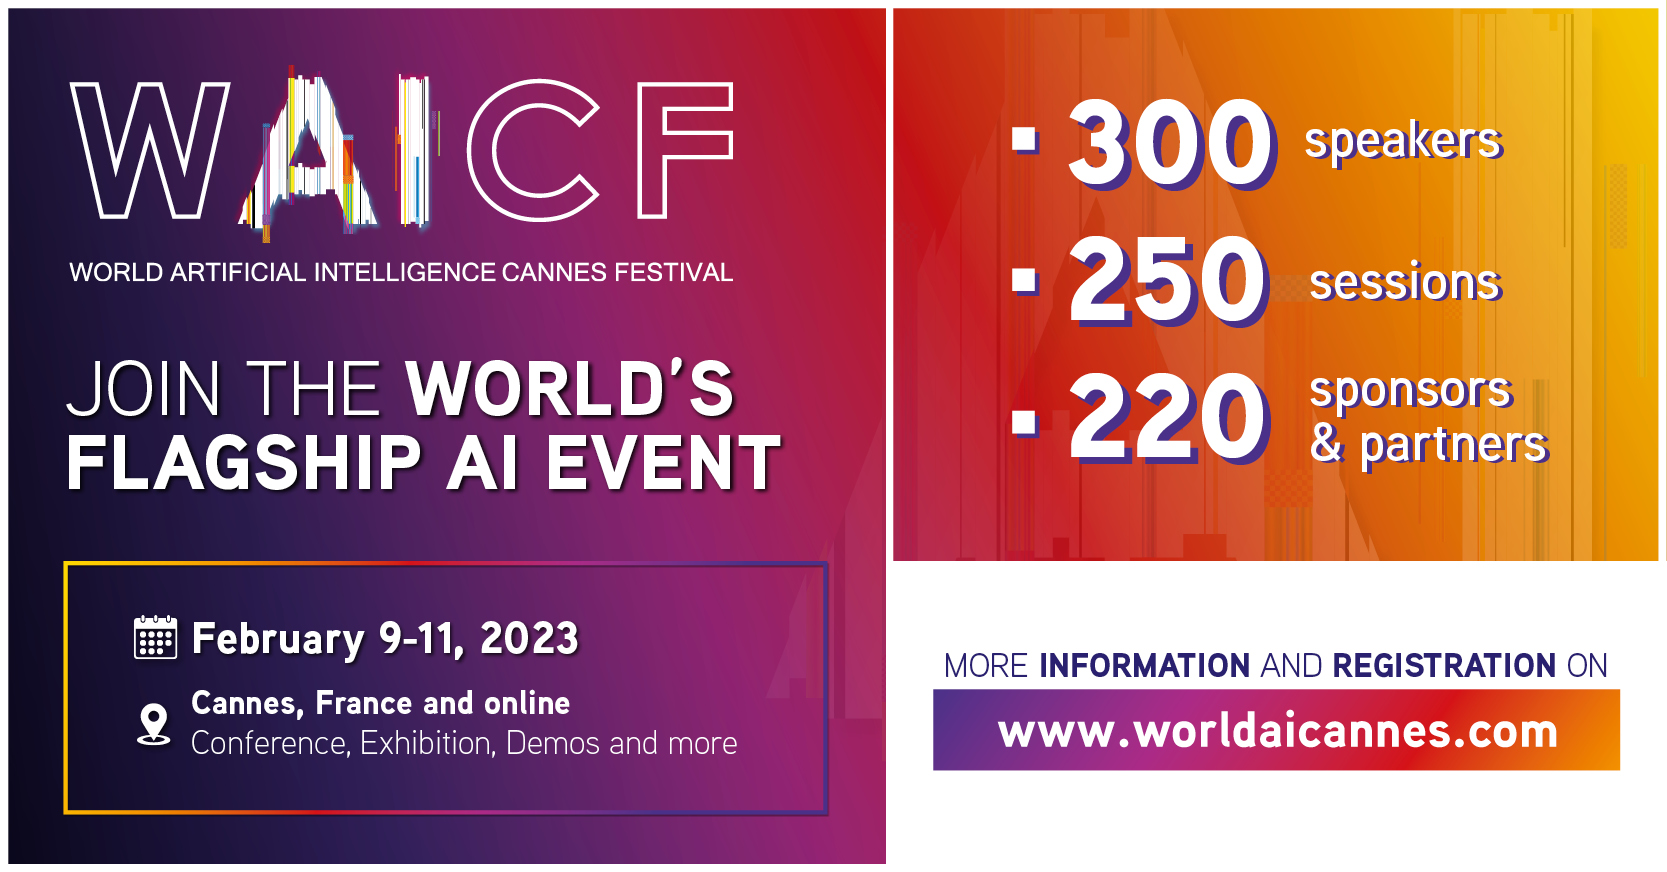 Le World AI Cannes Festival revient pour sa 2ème édition à Cannes